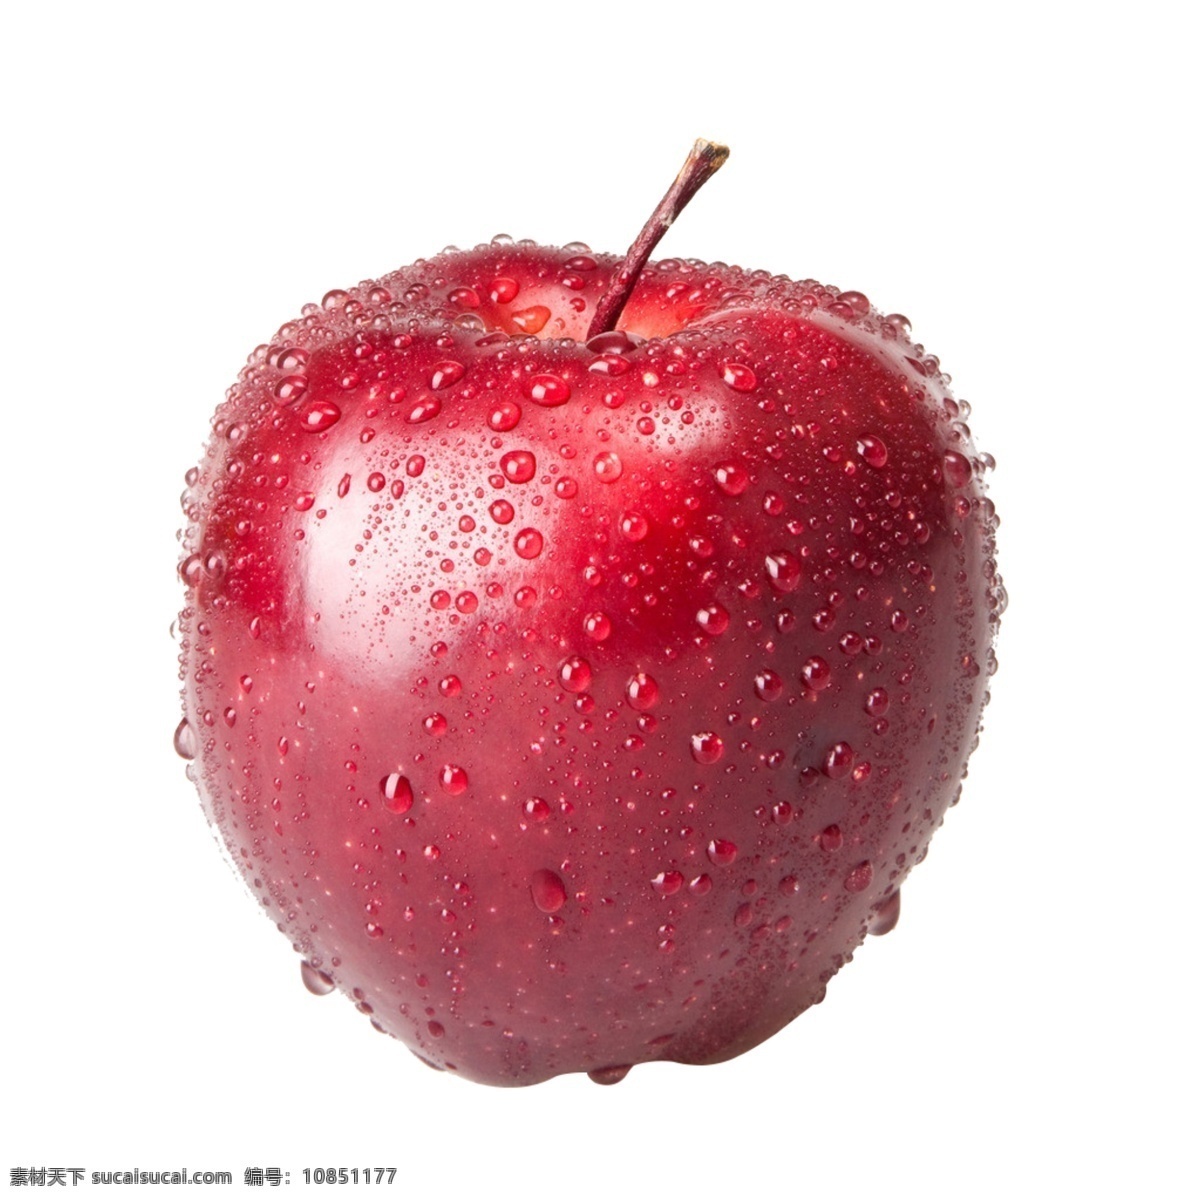 已扣好 水灵灵 红苹果 白底 红色 抠图 苹果 水珠 psd源文件 餐饮素材